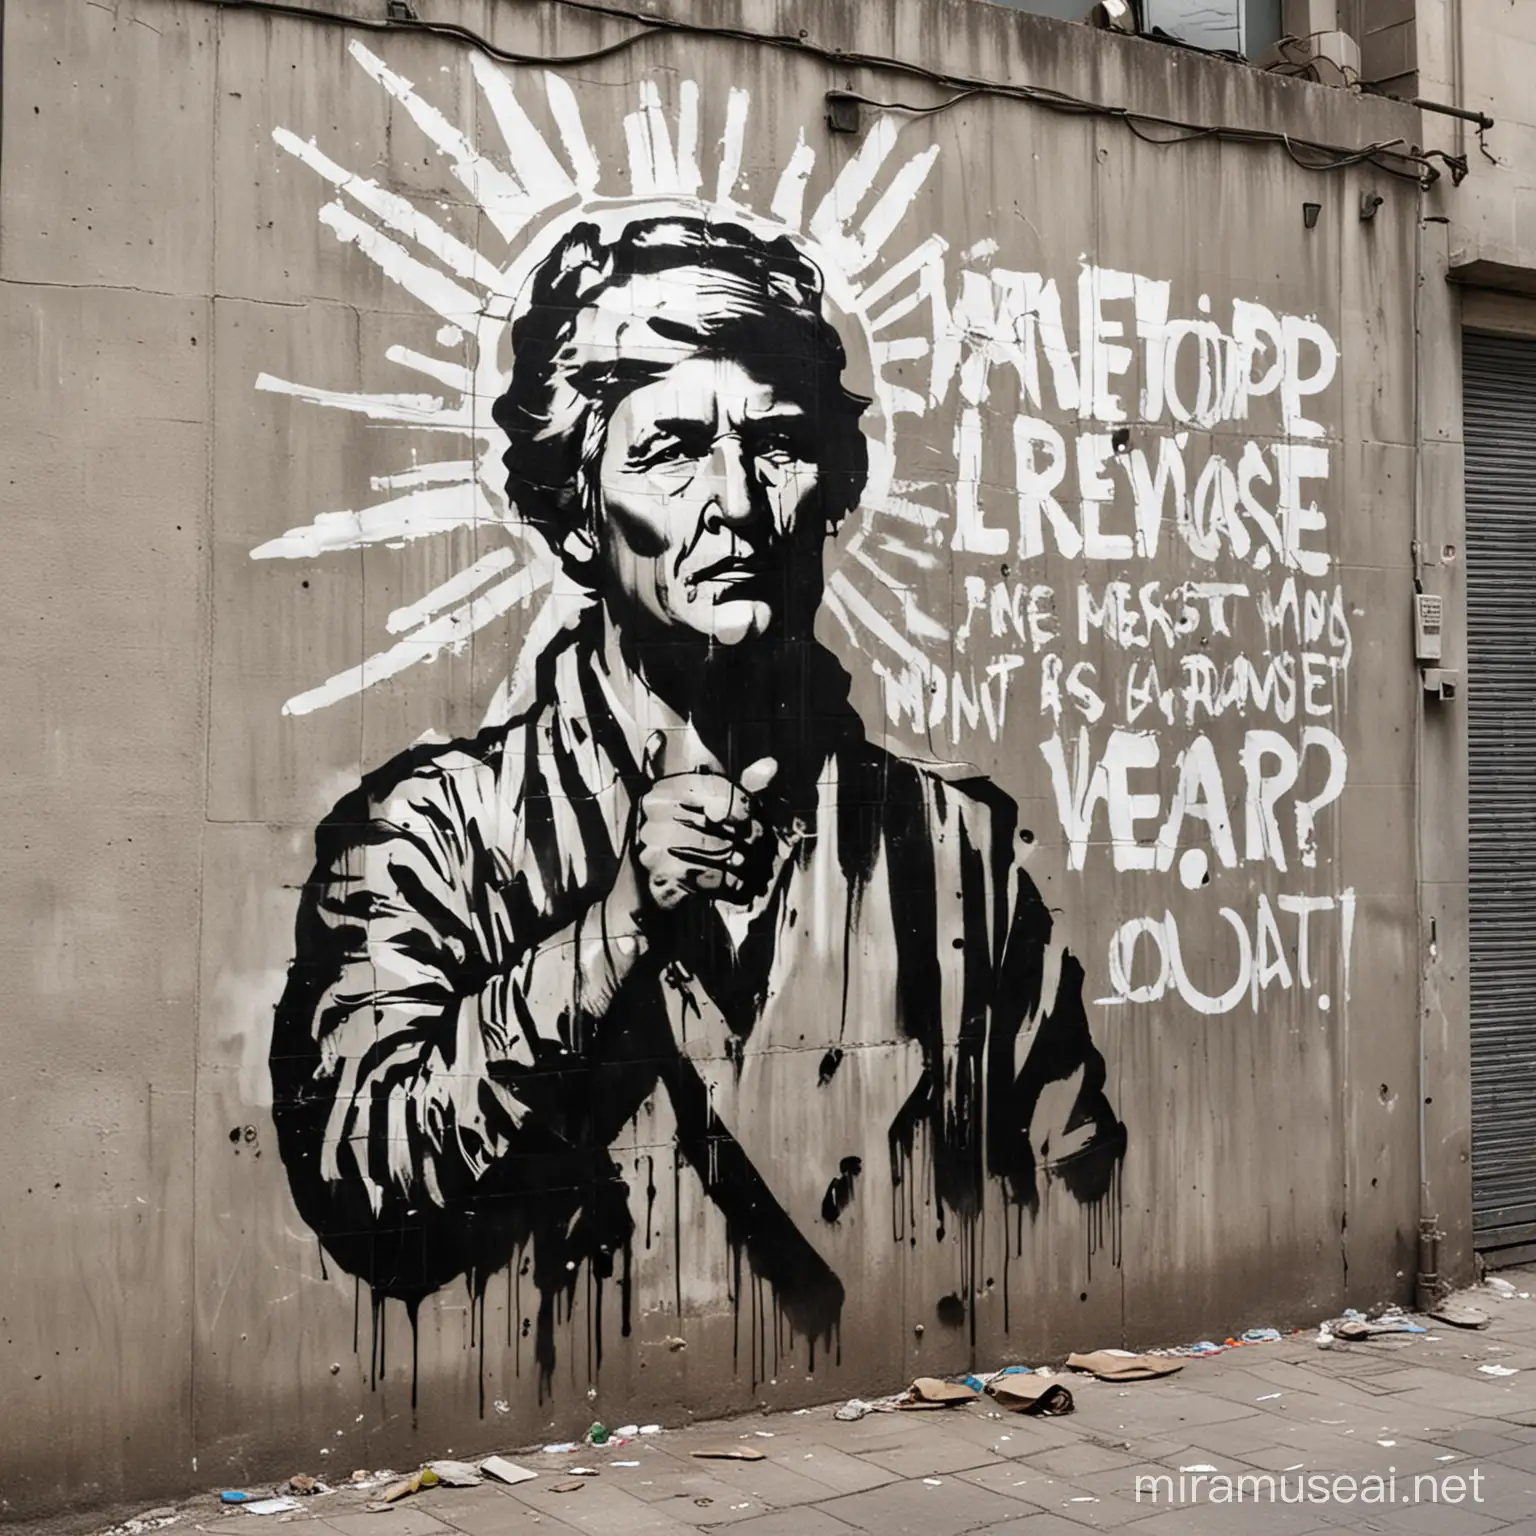 Naredi grafit, ki prikazuje kako ljudje protestirajo proti vojni in hočejo mir po vsem svetu. Grafit naj je narejen v šablonski tehniki.